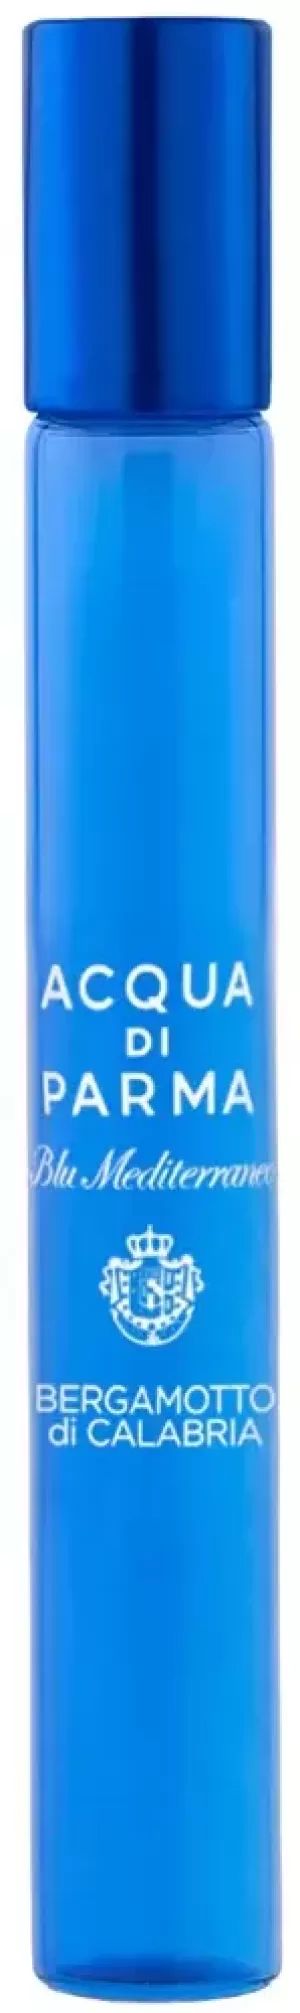 Acqua di Parma Blu Mediterraneo Bergamotto Di Calabria Eau de Toilette Unisex 10ml